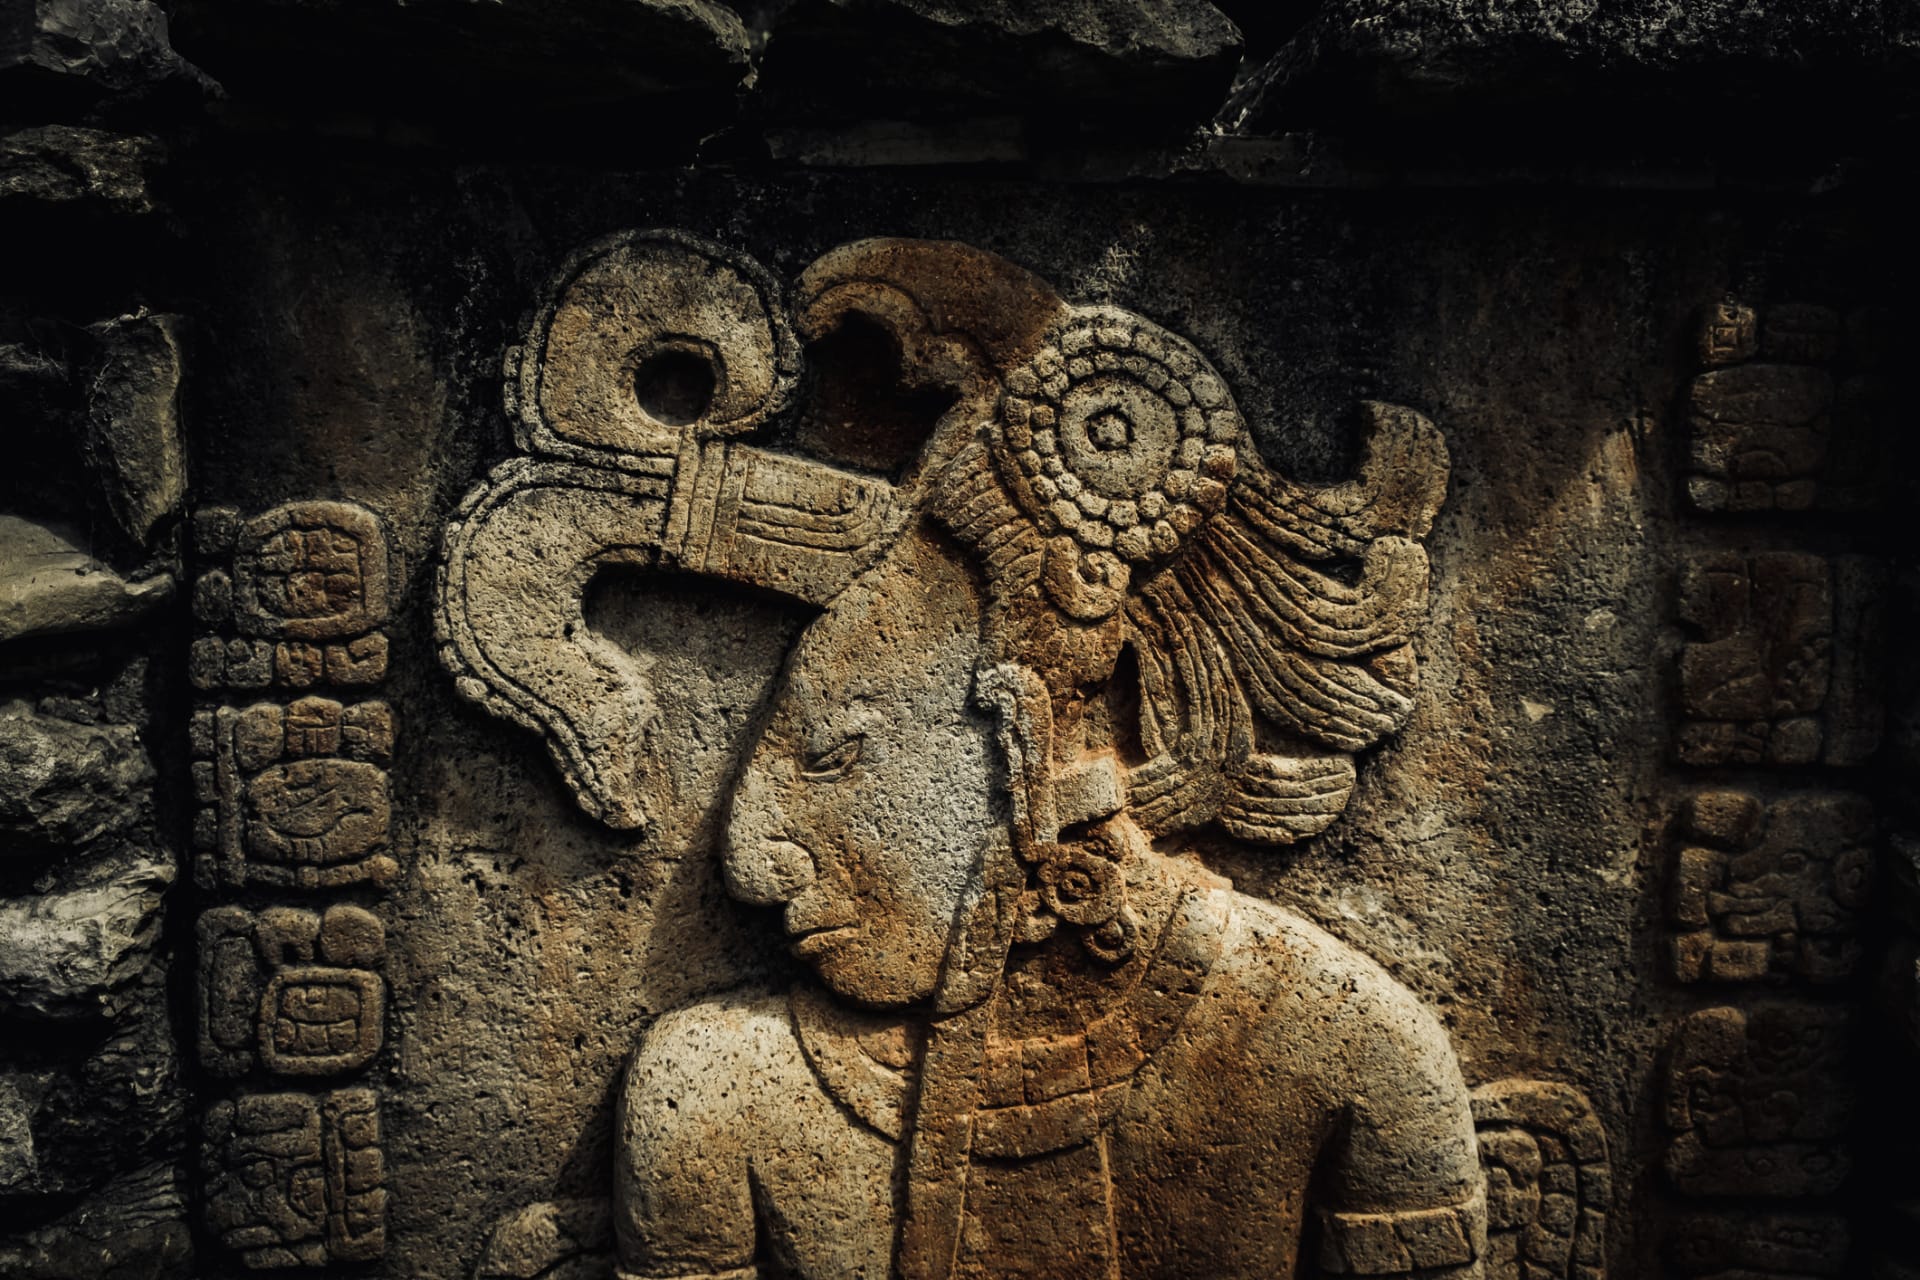 Mayové měli ohromující znalosti kalendáře, astronomie a matematiky